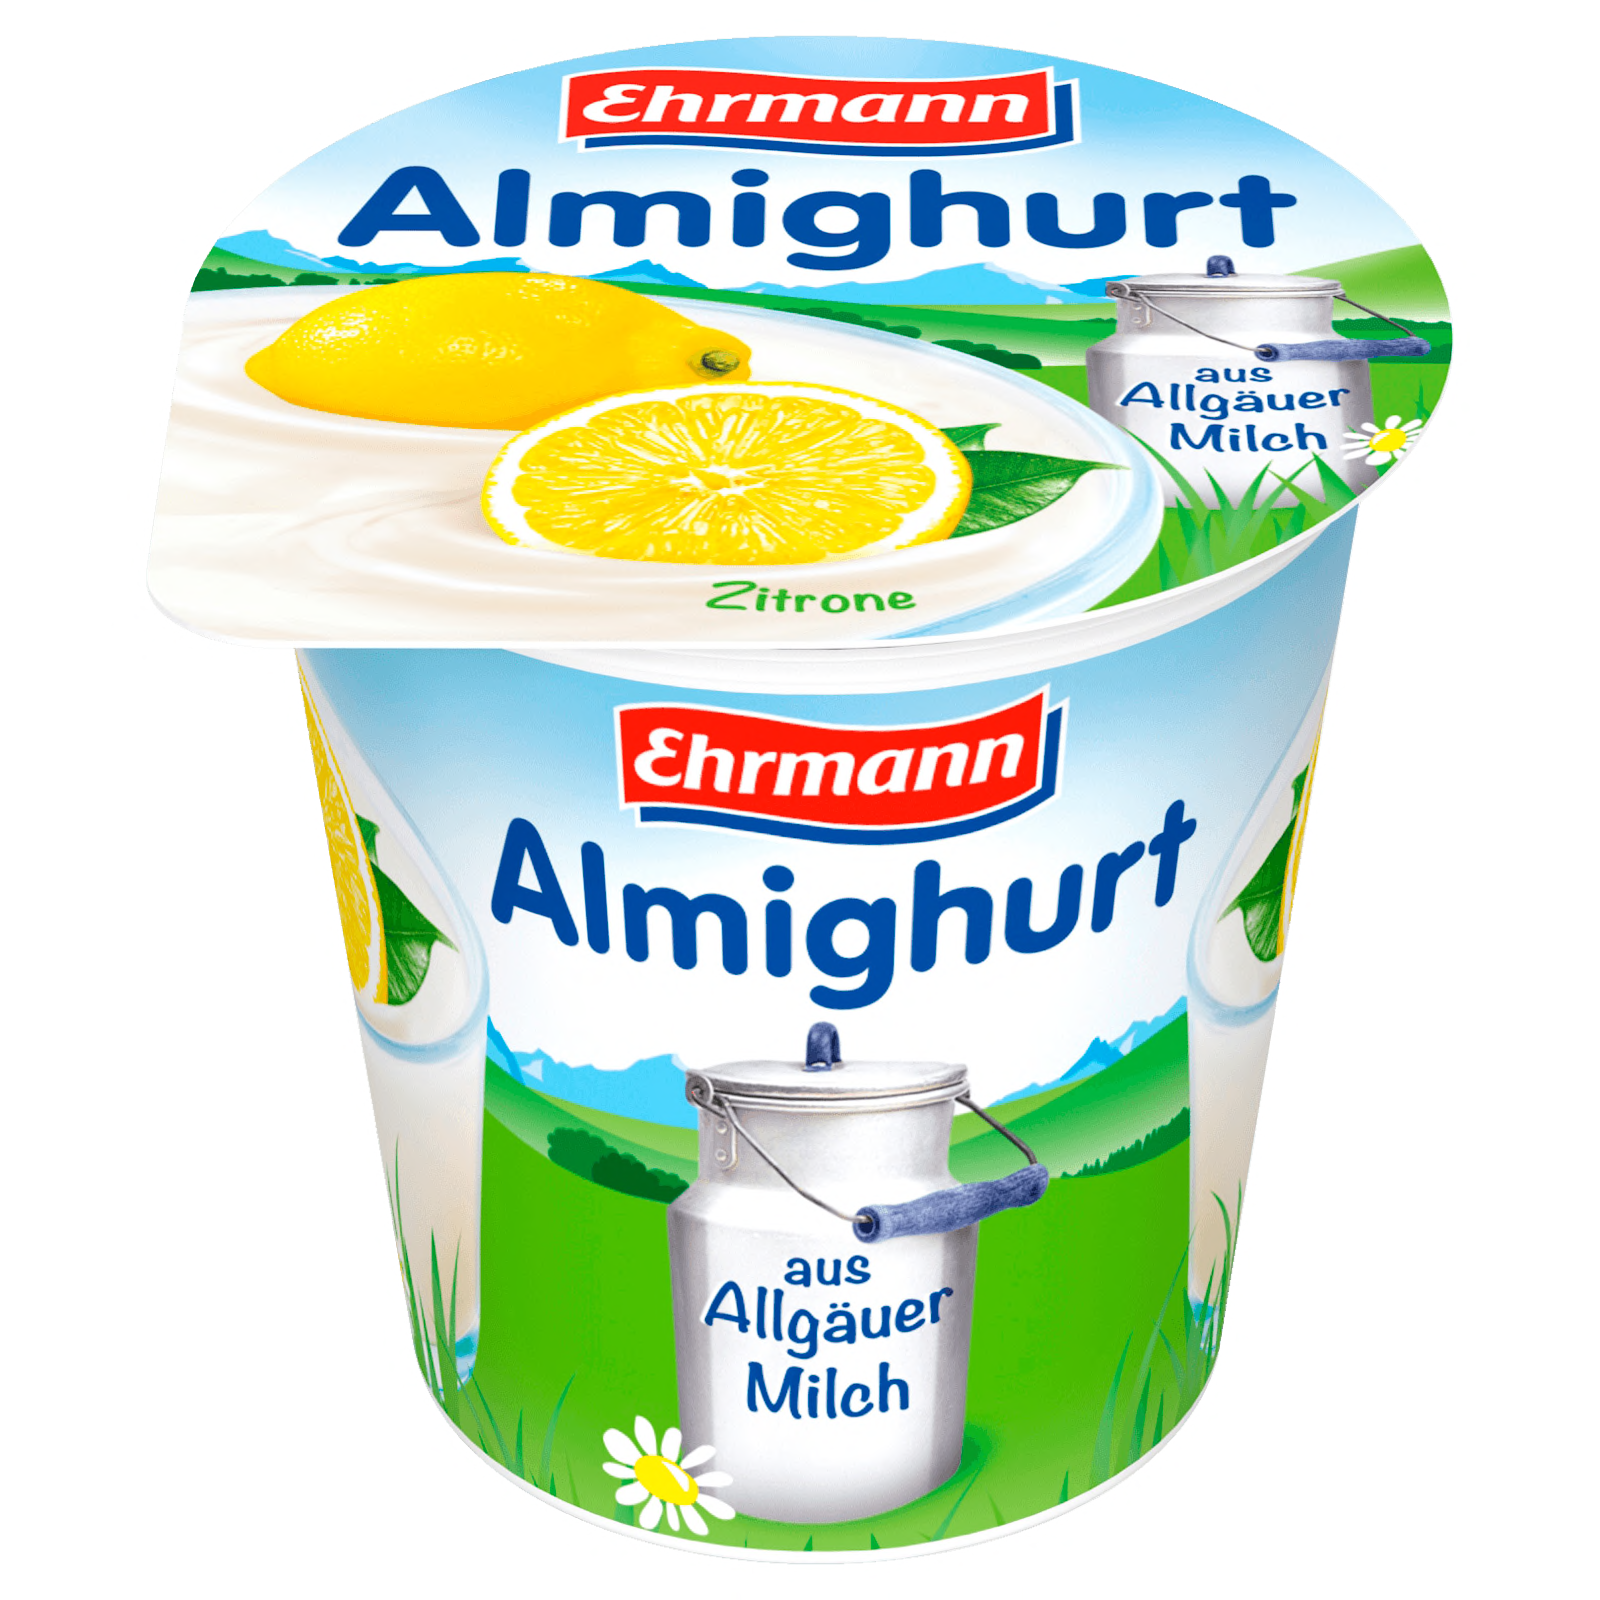 Ehrmann Almighurt Zitrone 150g  für 0.79 EUR